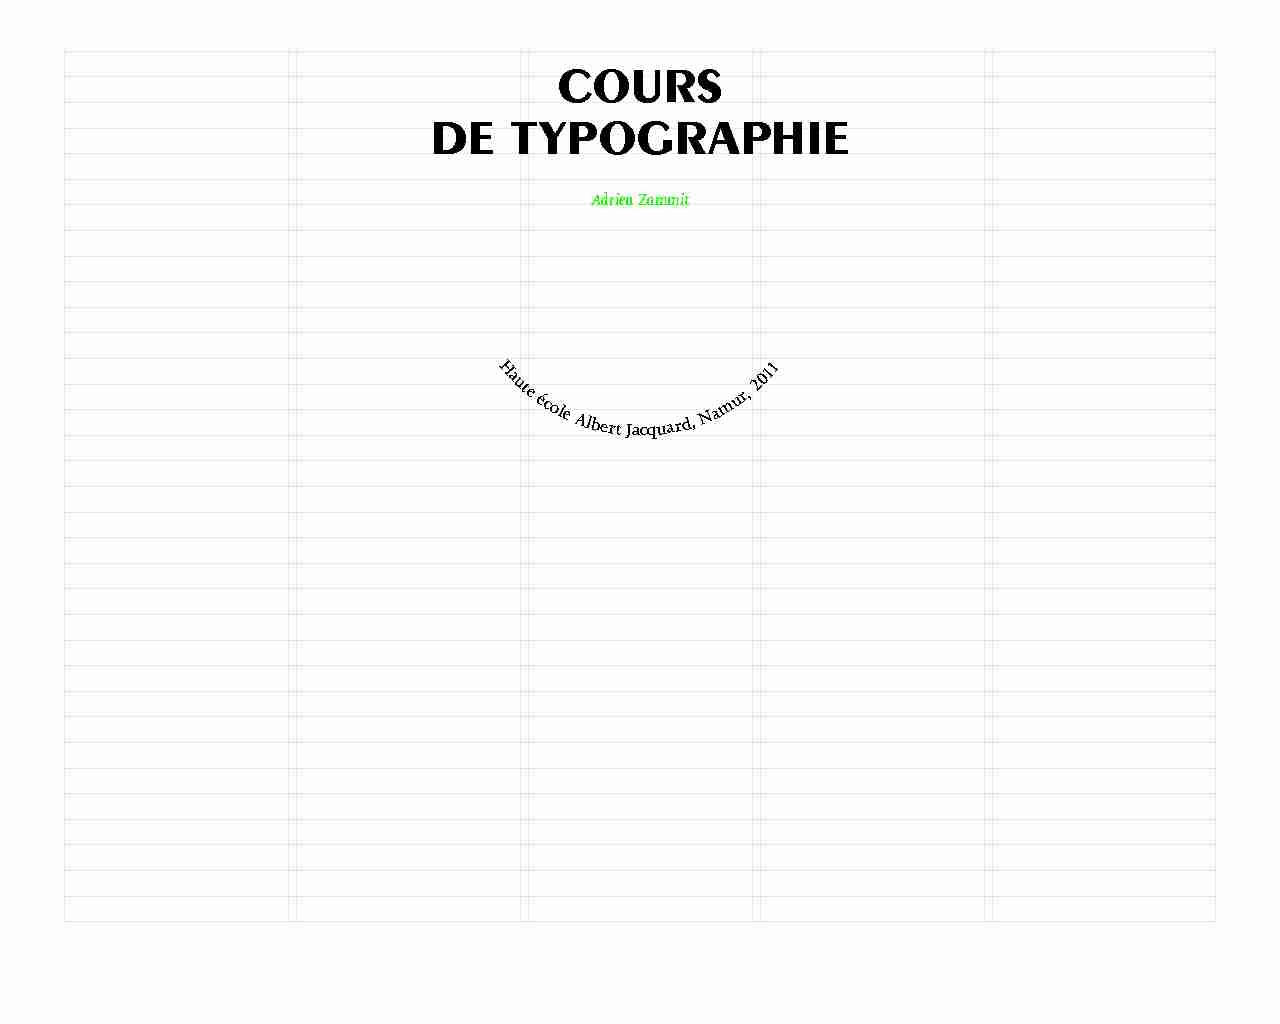 Cours-de-typographie-AdrienZammit-partie1.pdf